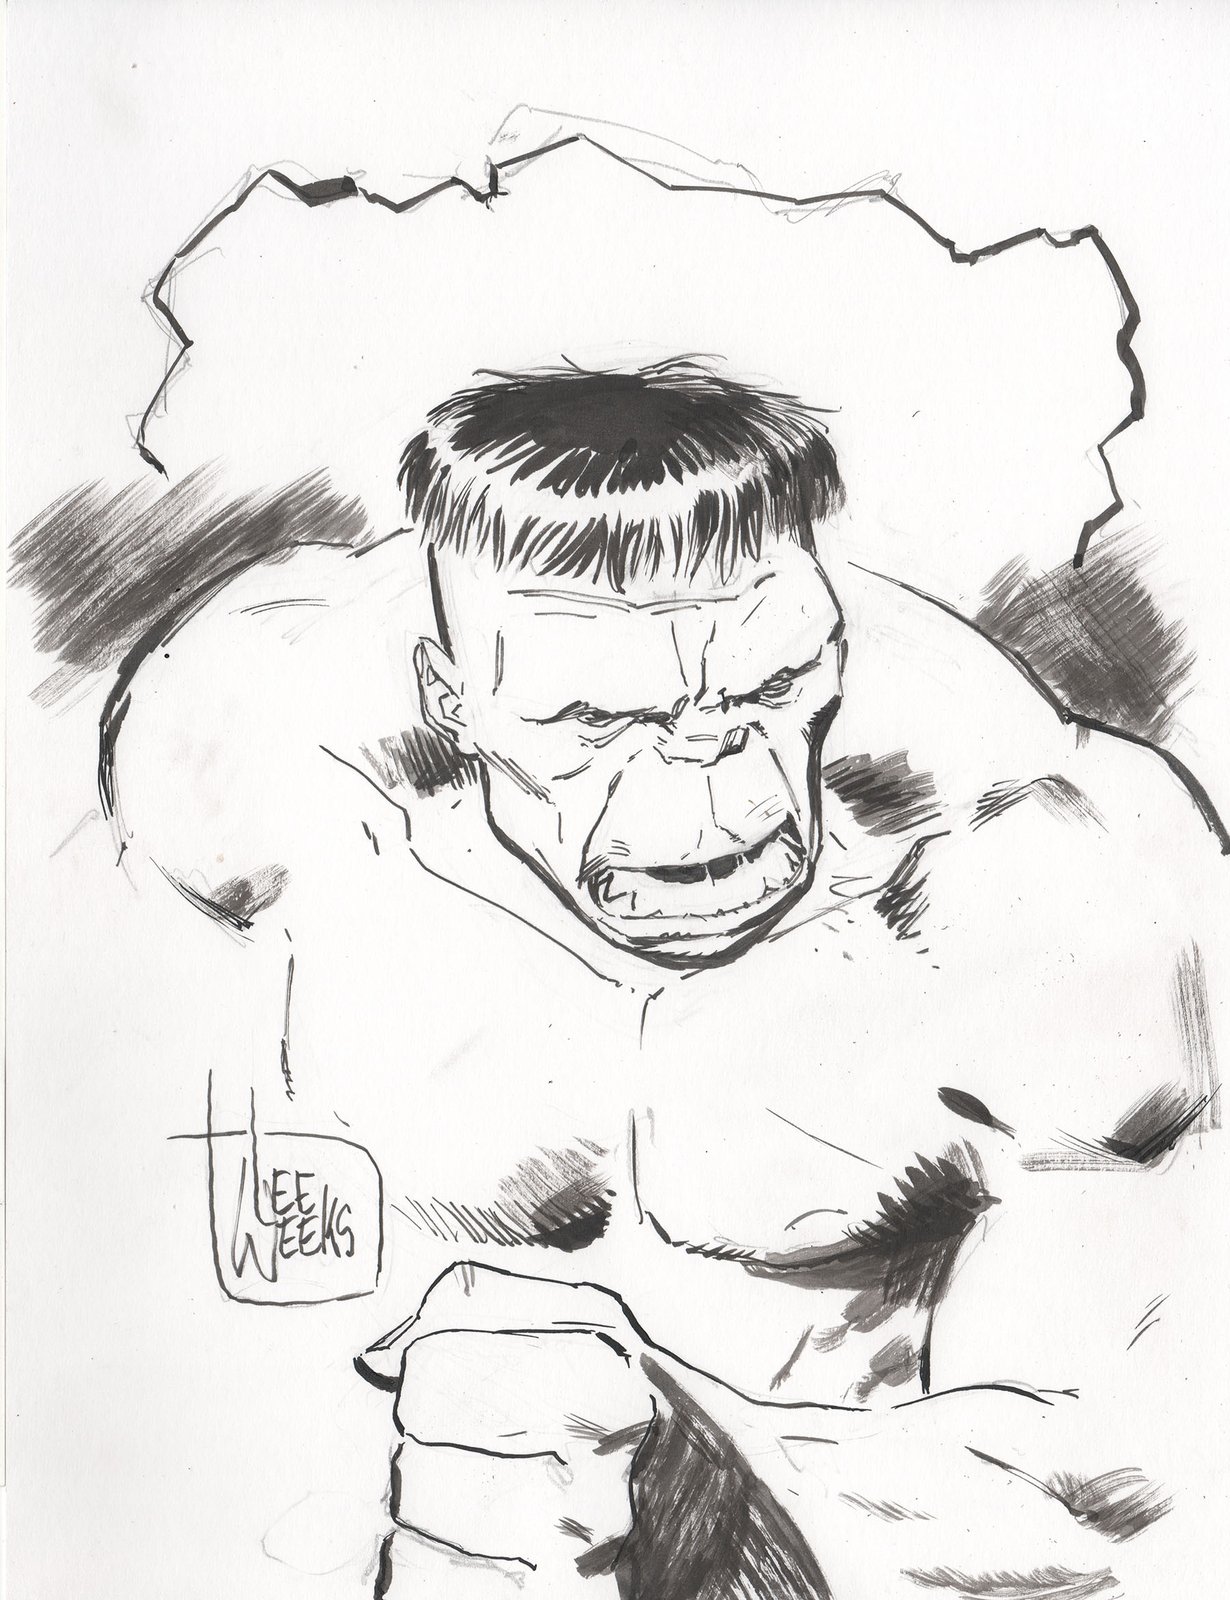 Easy step by step Hulk superhero pencil sketch - YouTube